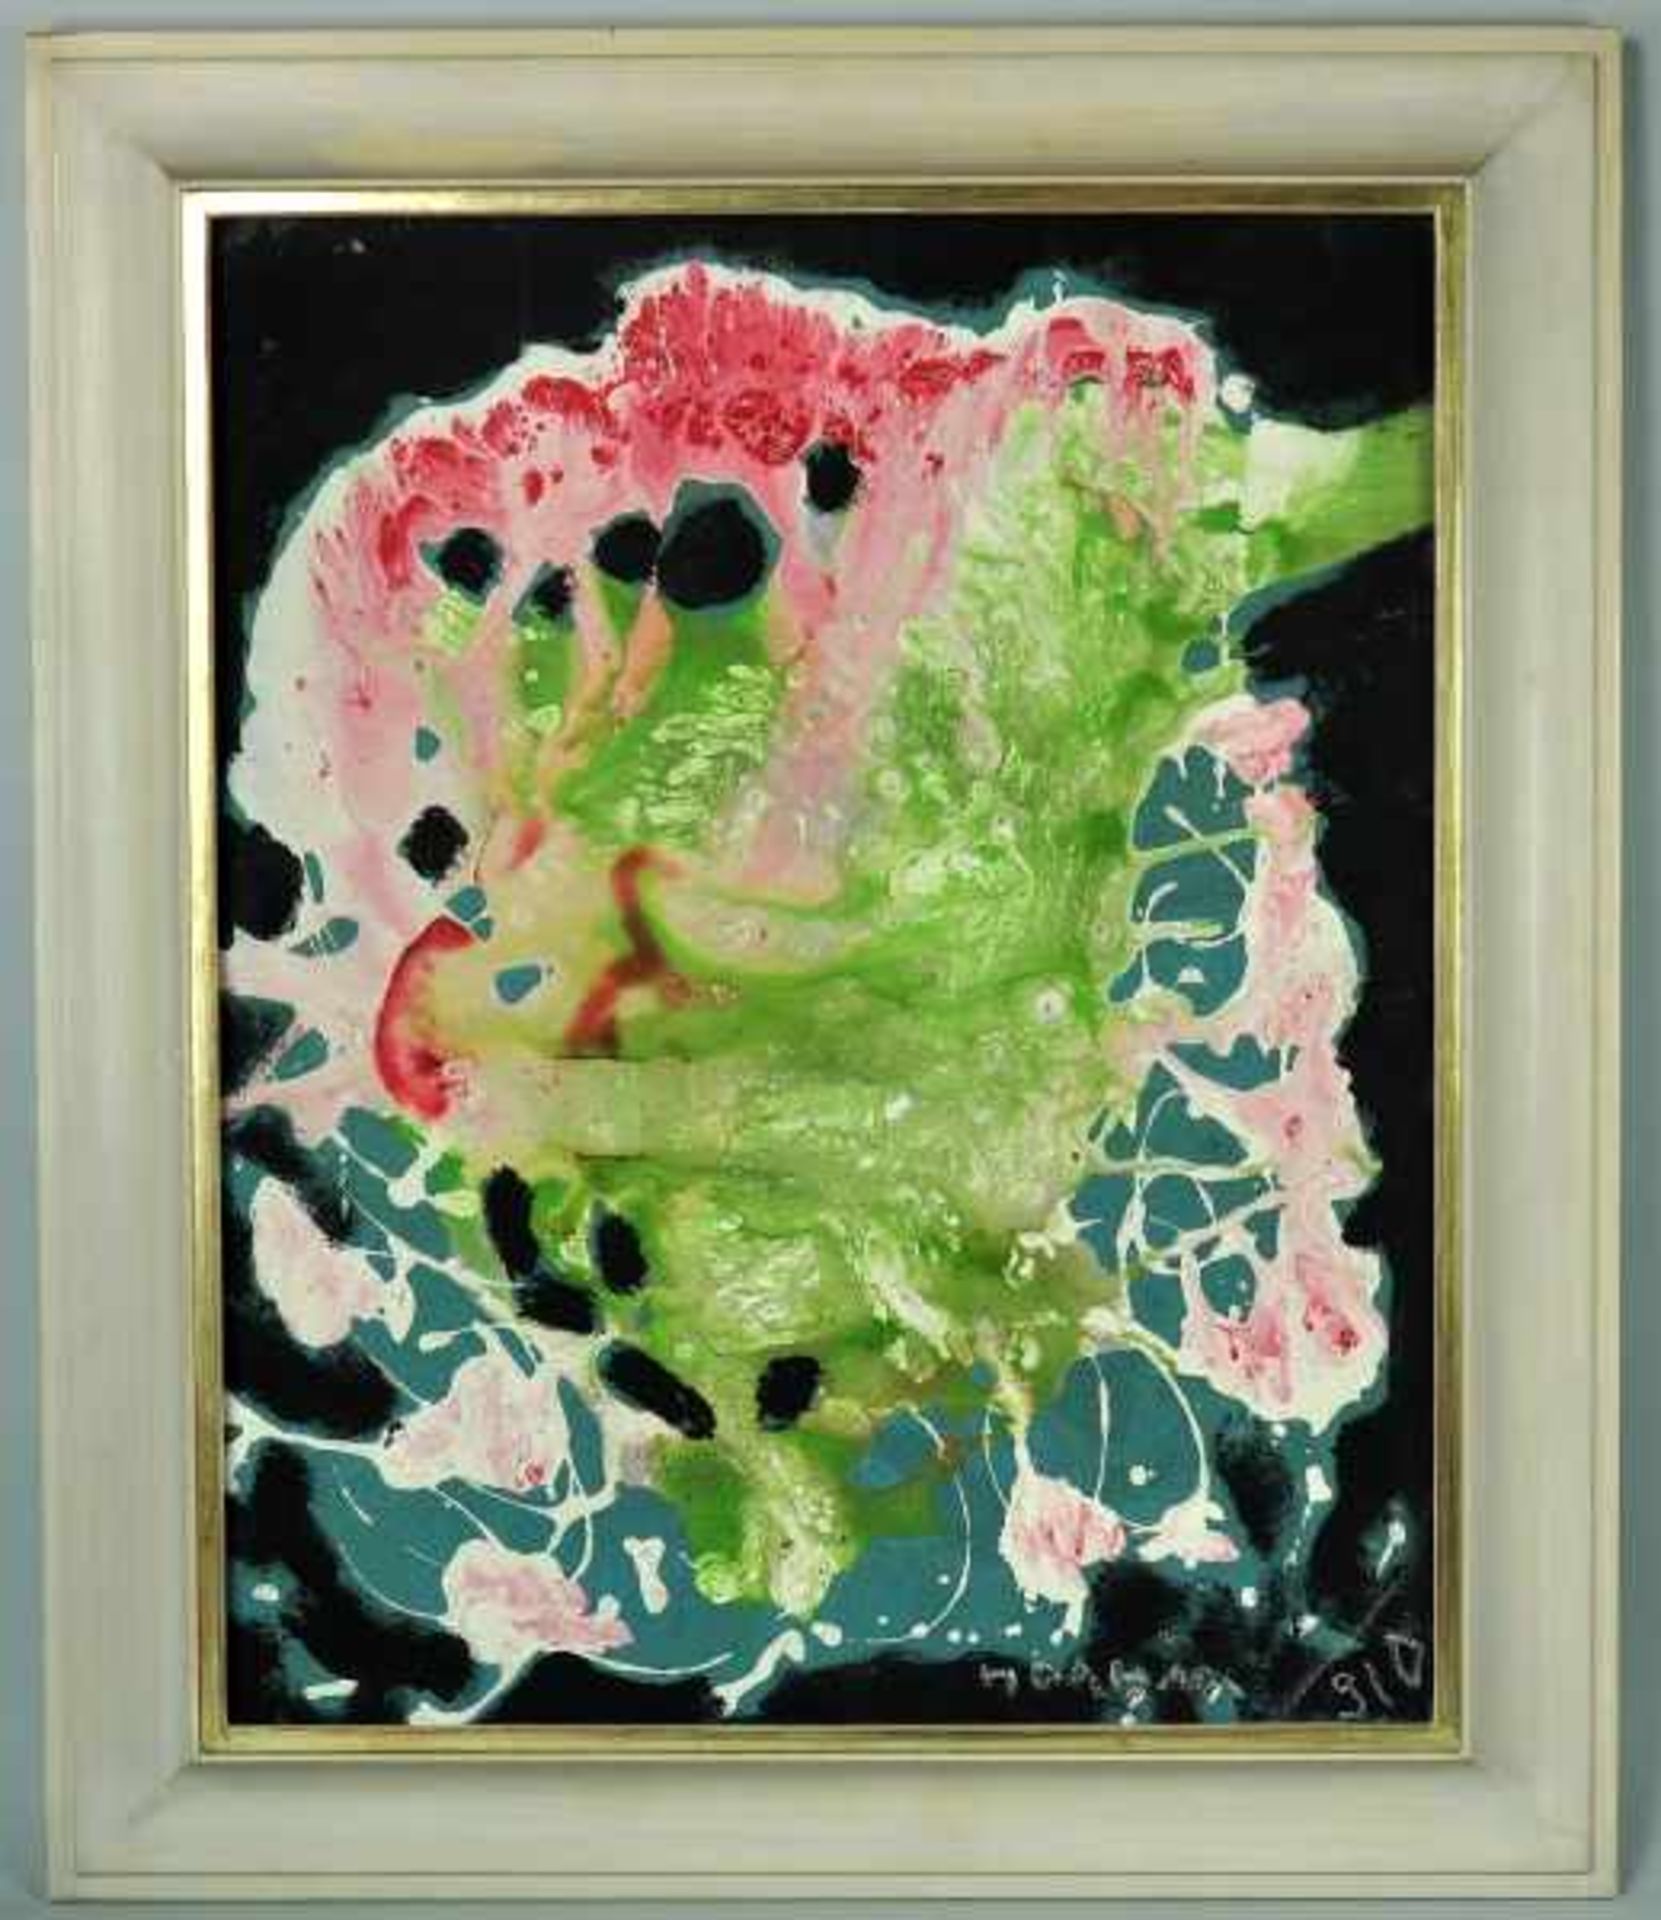 DAHM Helen (1878-1964) "Bunter Pfau", abstrakte farbige Komposition in Mischtechnik mit Acryl u. - Image 2 of 4